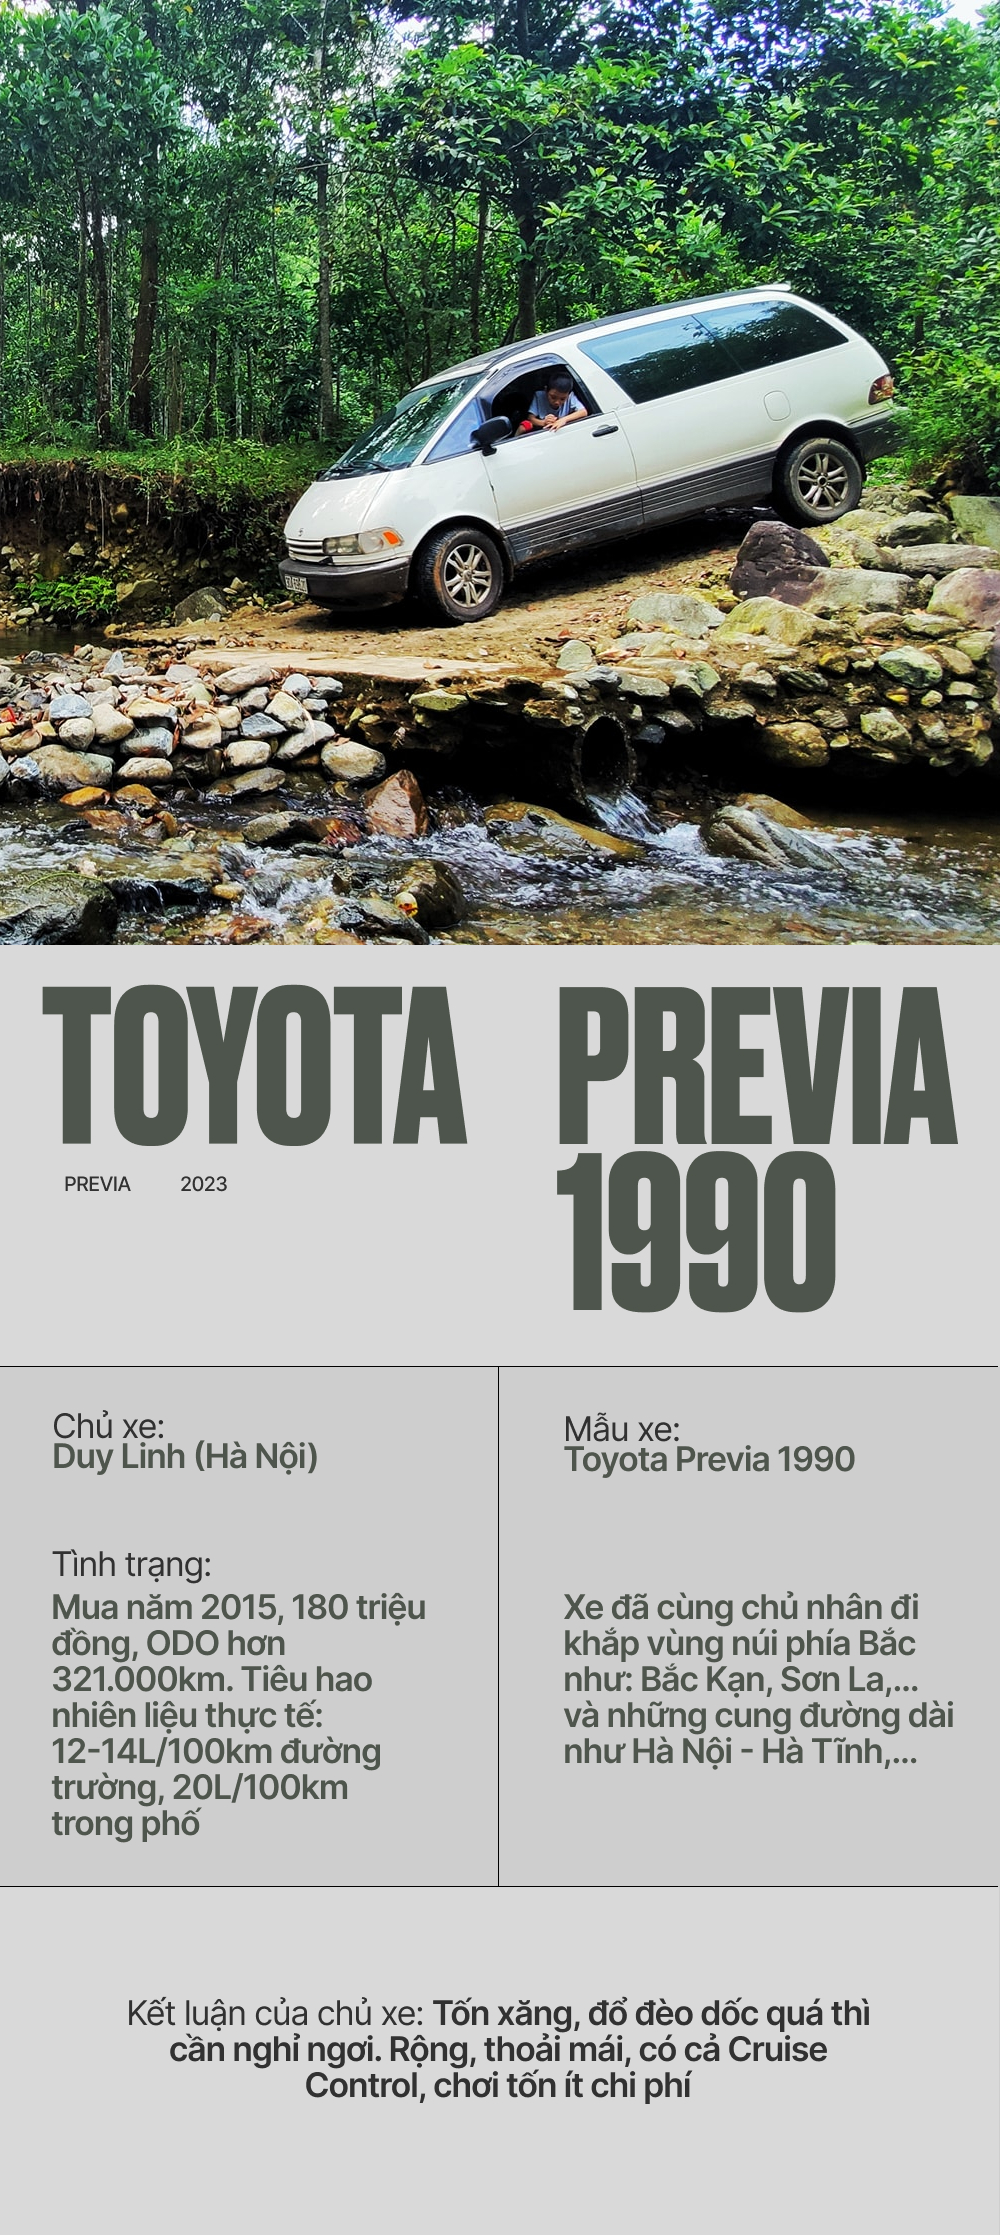 Tôi bỏ 180 triệu mua Toyota Previa 1990 chạy gần 10 năm nay: 'Ngốn xăng nhưng đáng từng đồng' - Ảnh 1.